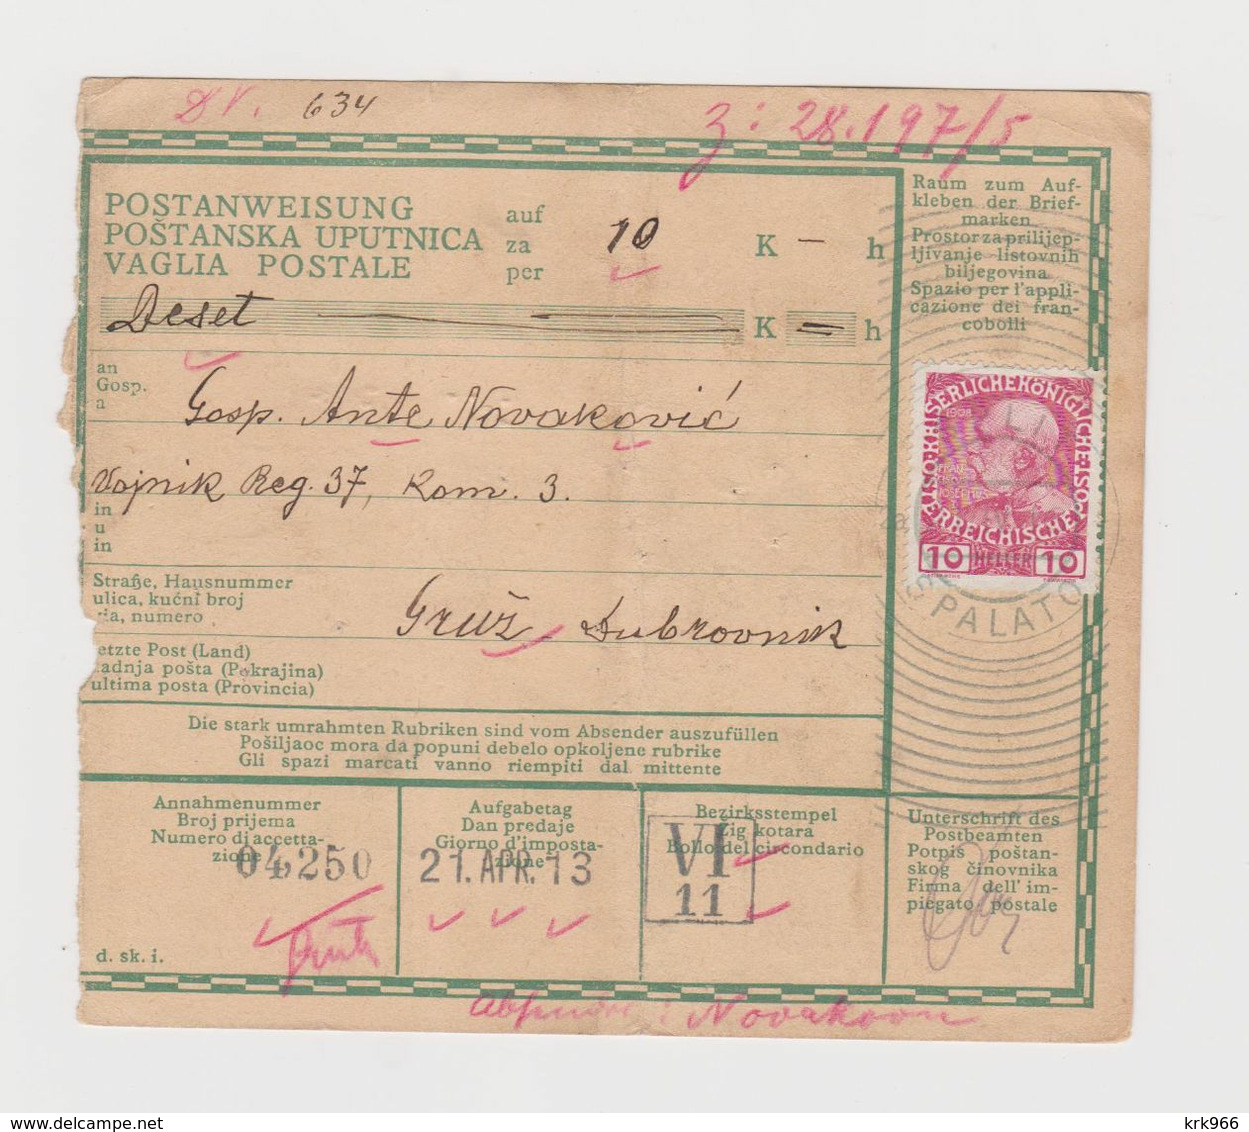 CROATIA, AUSTRIA 1913 SPLIT SPALATO Parcel Card - Croatia